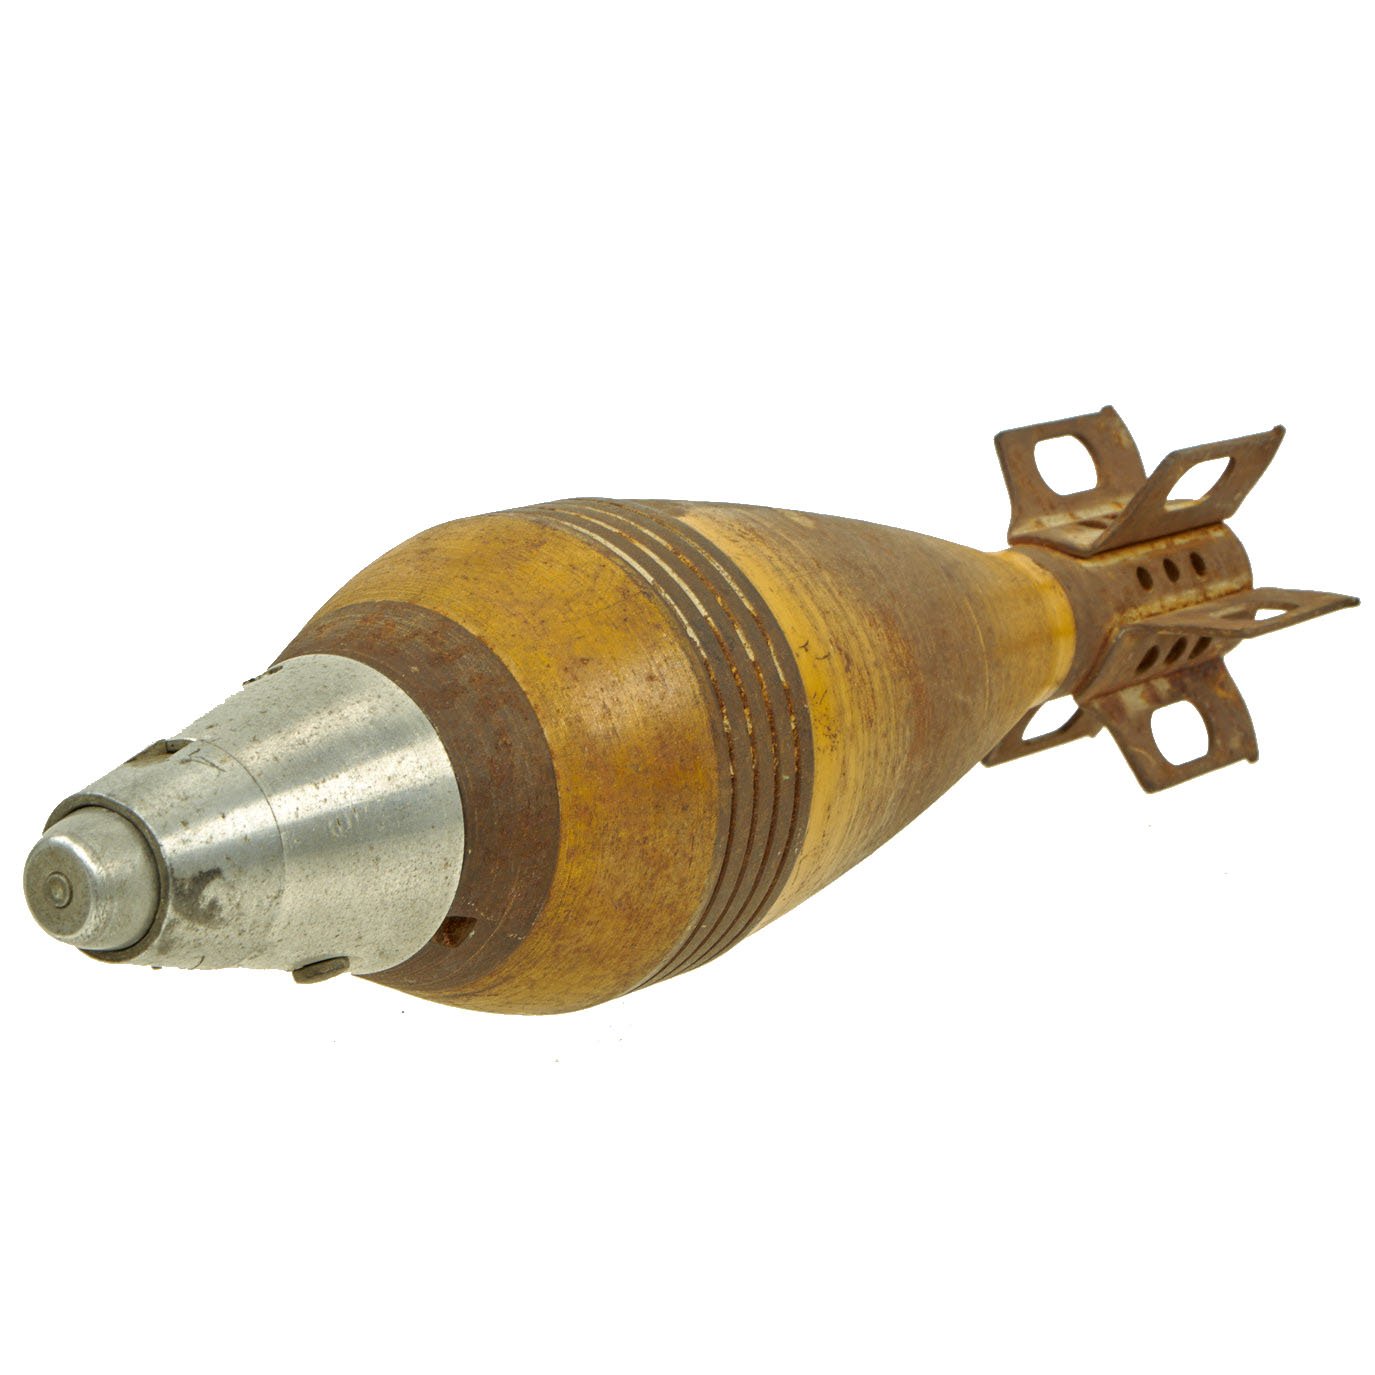 mortar shell